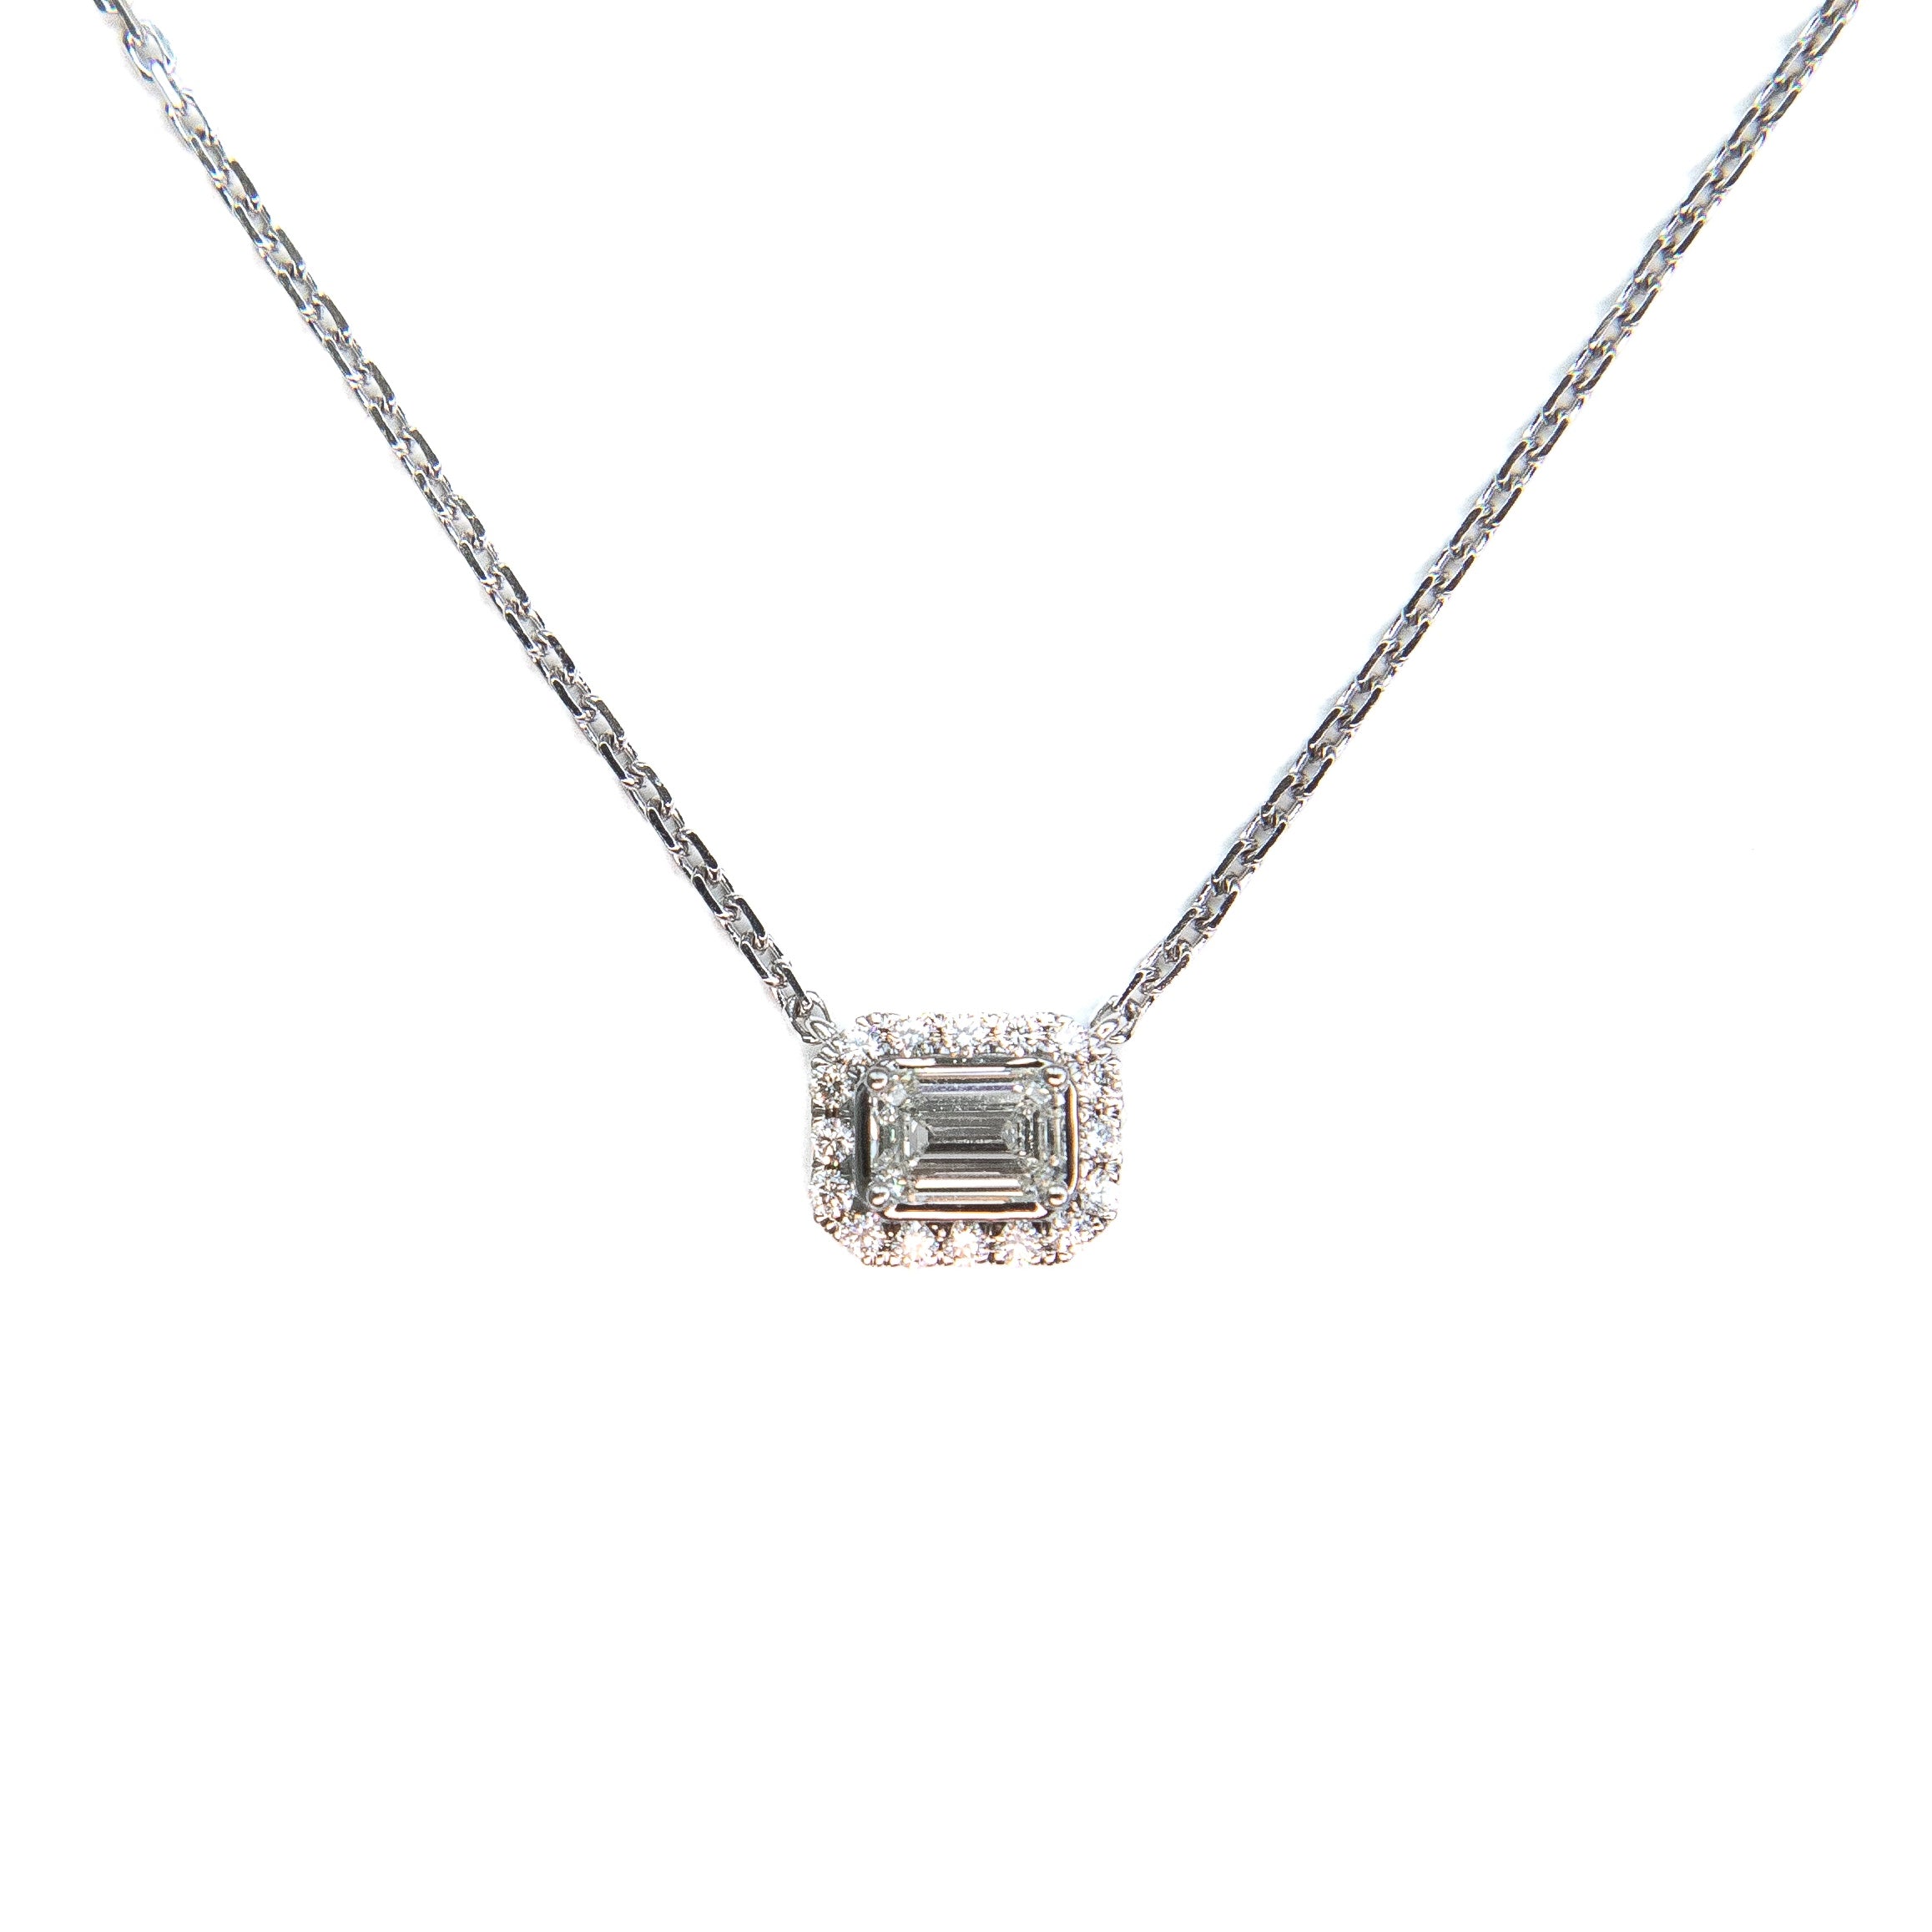 Centered Emerald cut diamond pendant necklace